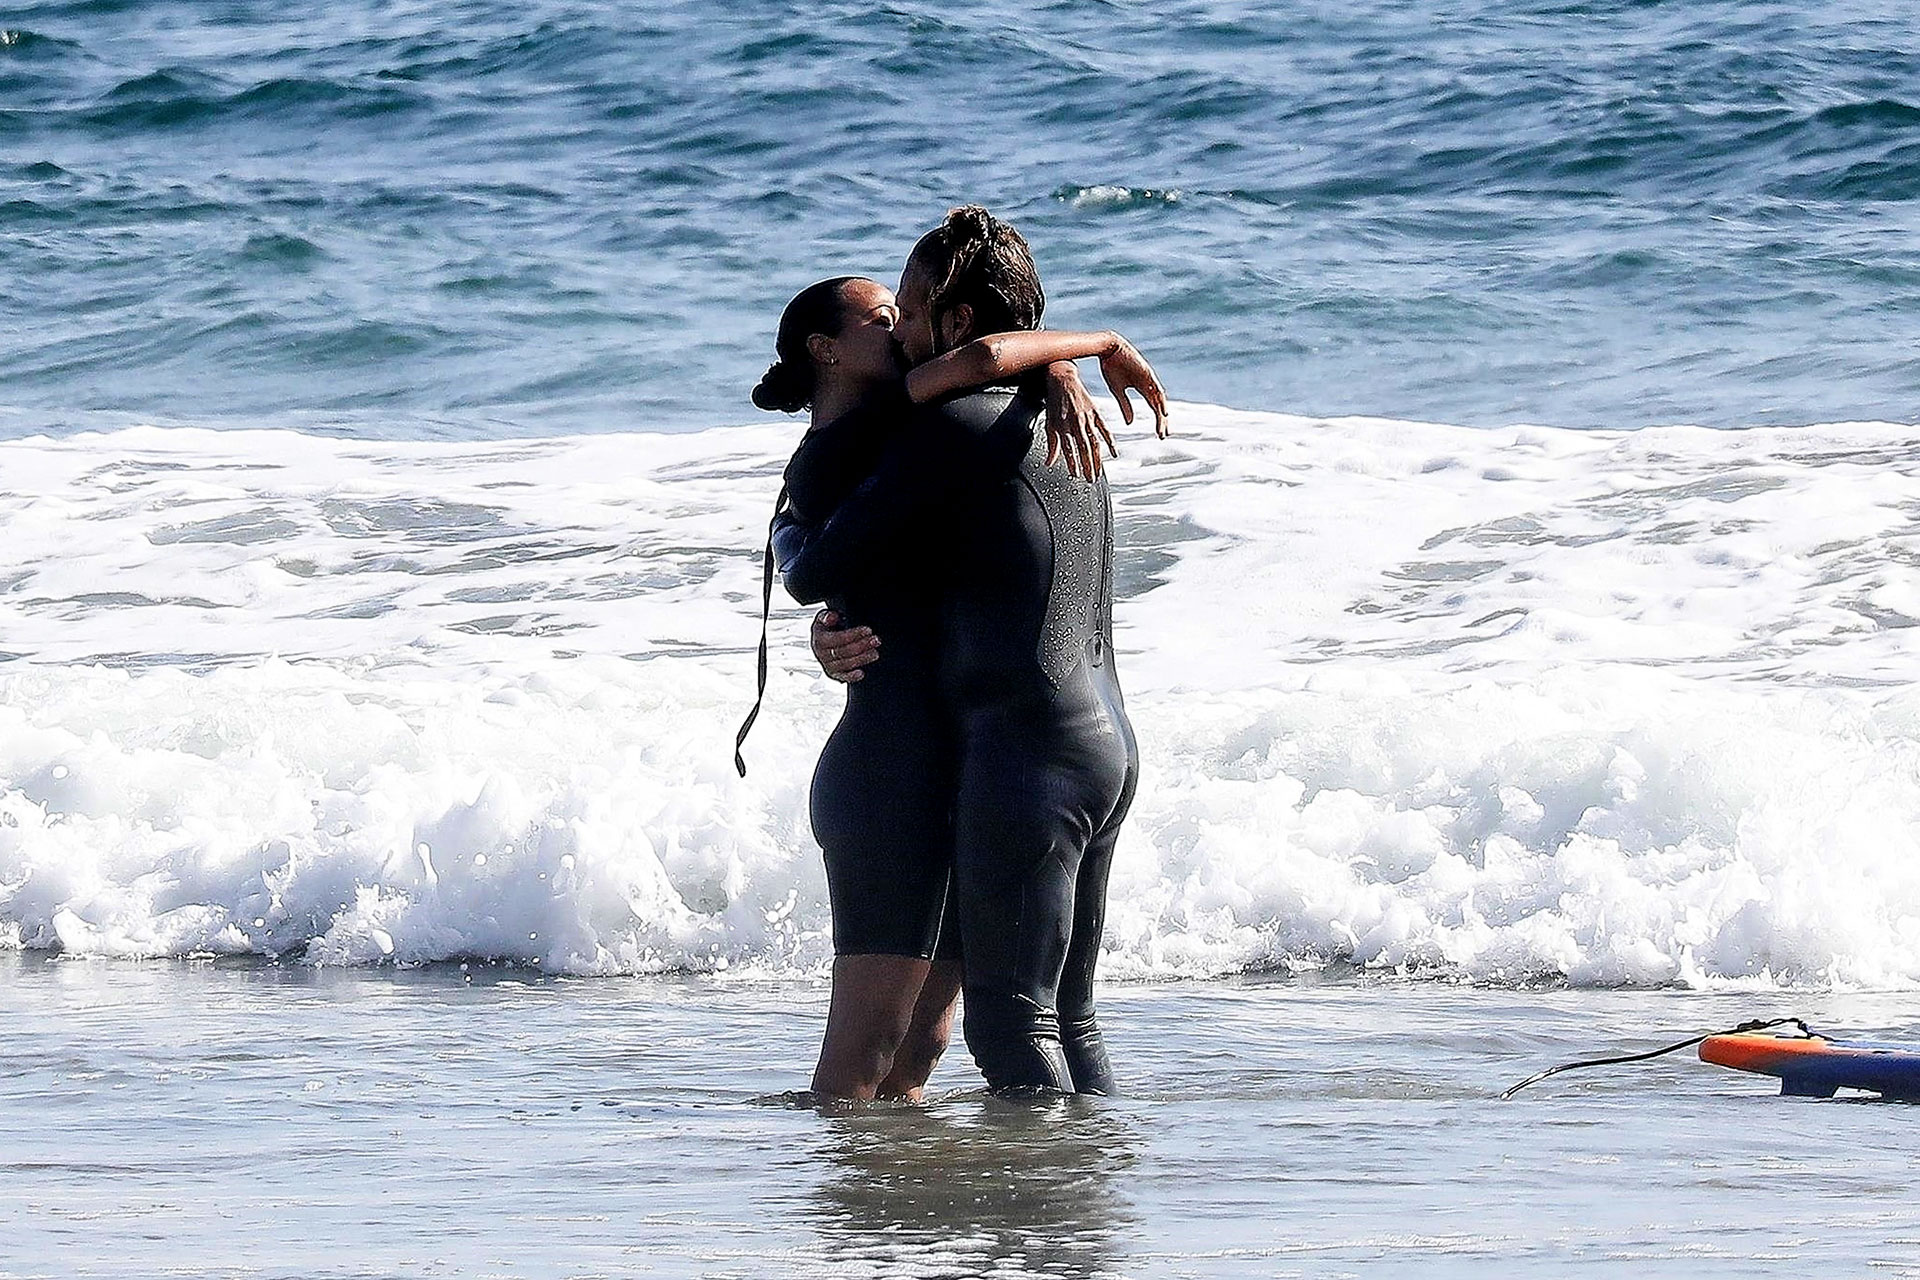 Muy enamorados: la actriz Zoe Saldana y su esposo, Marco Perego Saldana, se besaron y abrazaron en las playas de Malibú. La pareja se divirtió practicando surf en un hermoso día de sol (Foto: Backgrid / The Grosby Group)